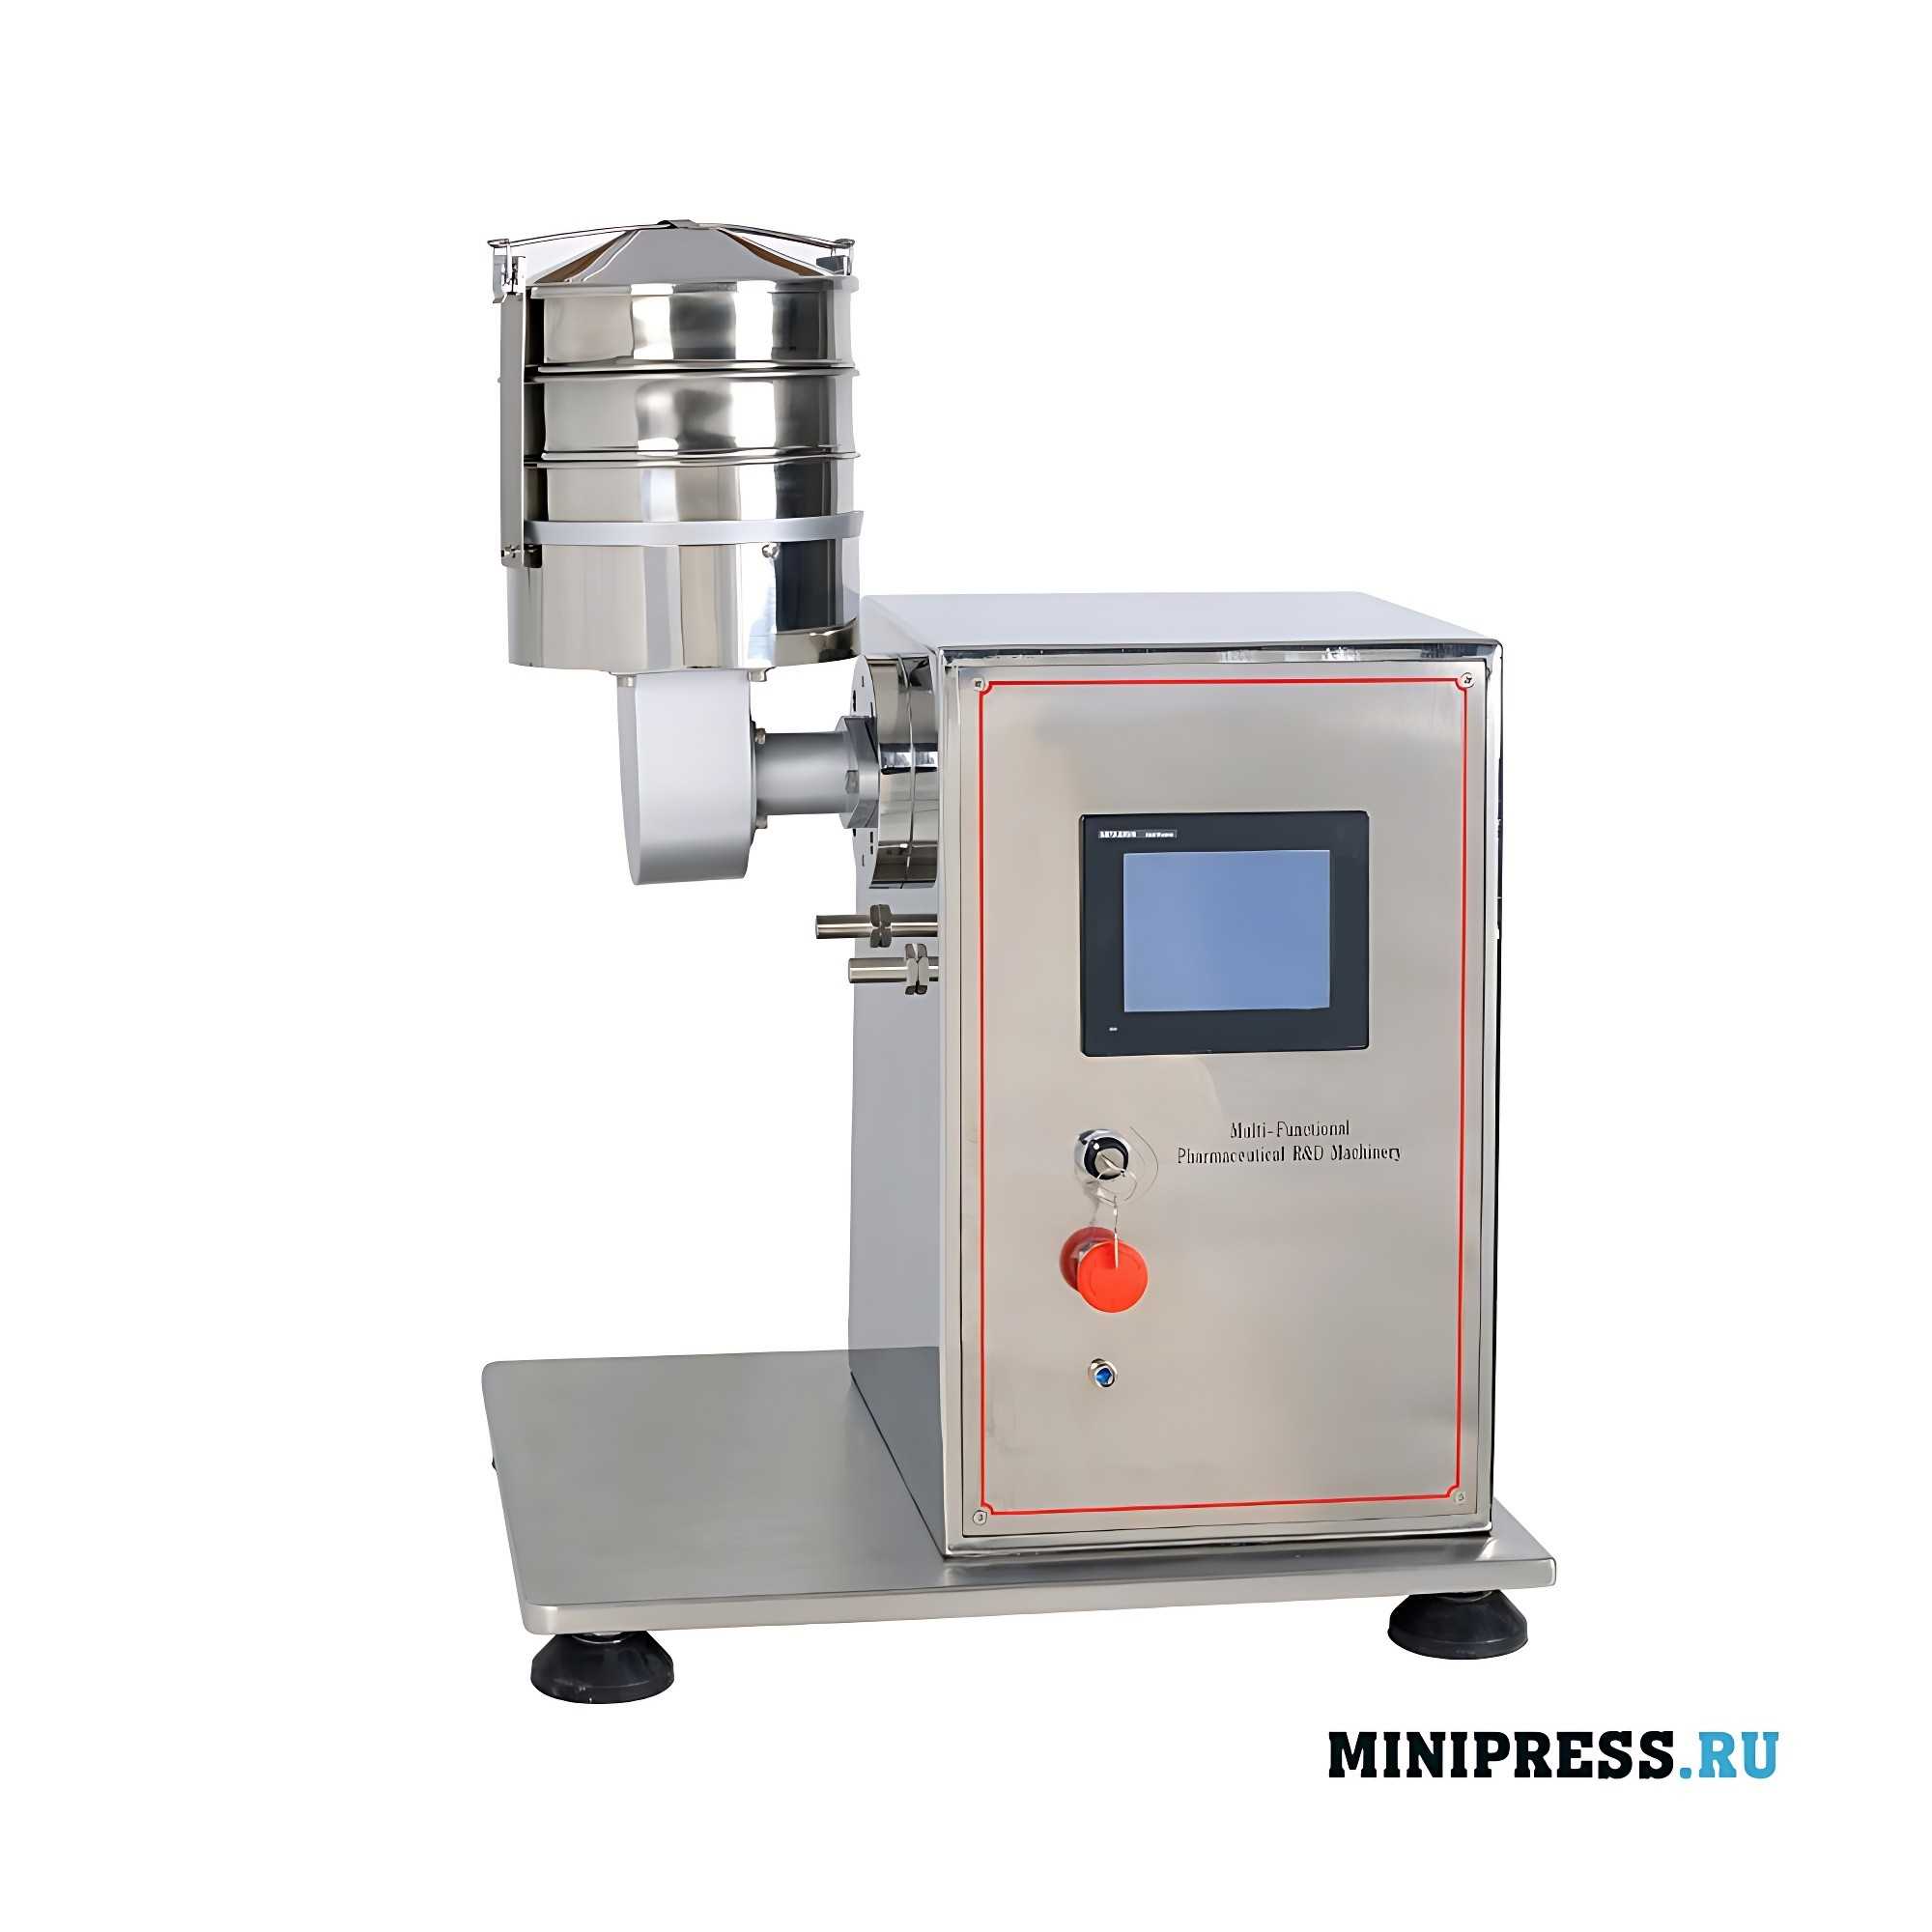 Equipo farmacéutico experimental multifuncional y filtro vibratorio UNIDAD 2